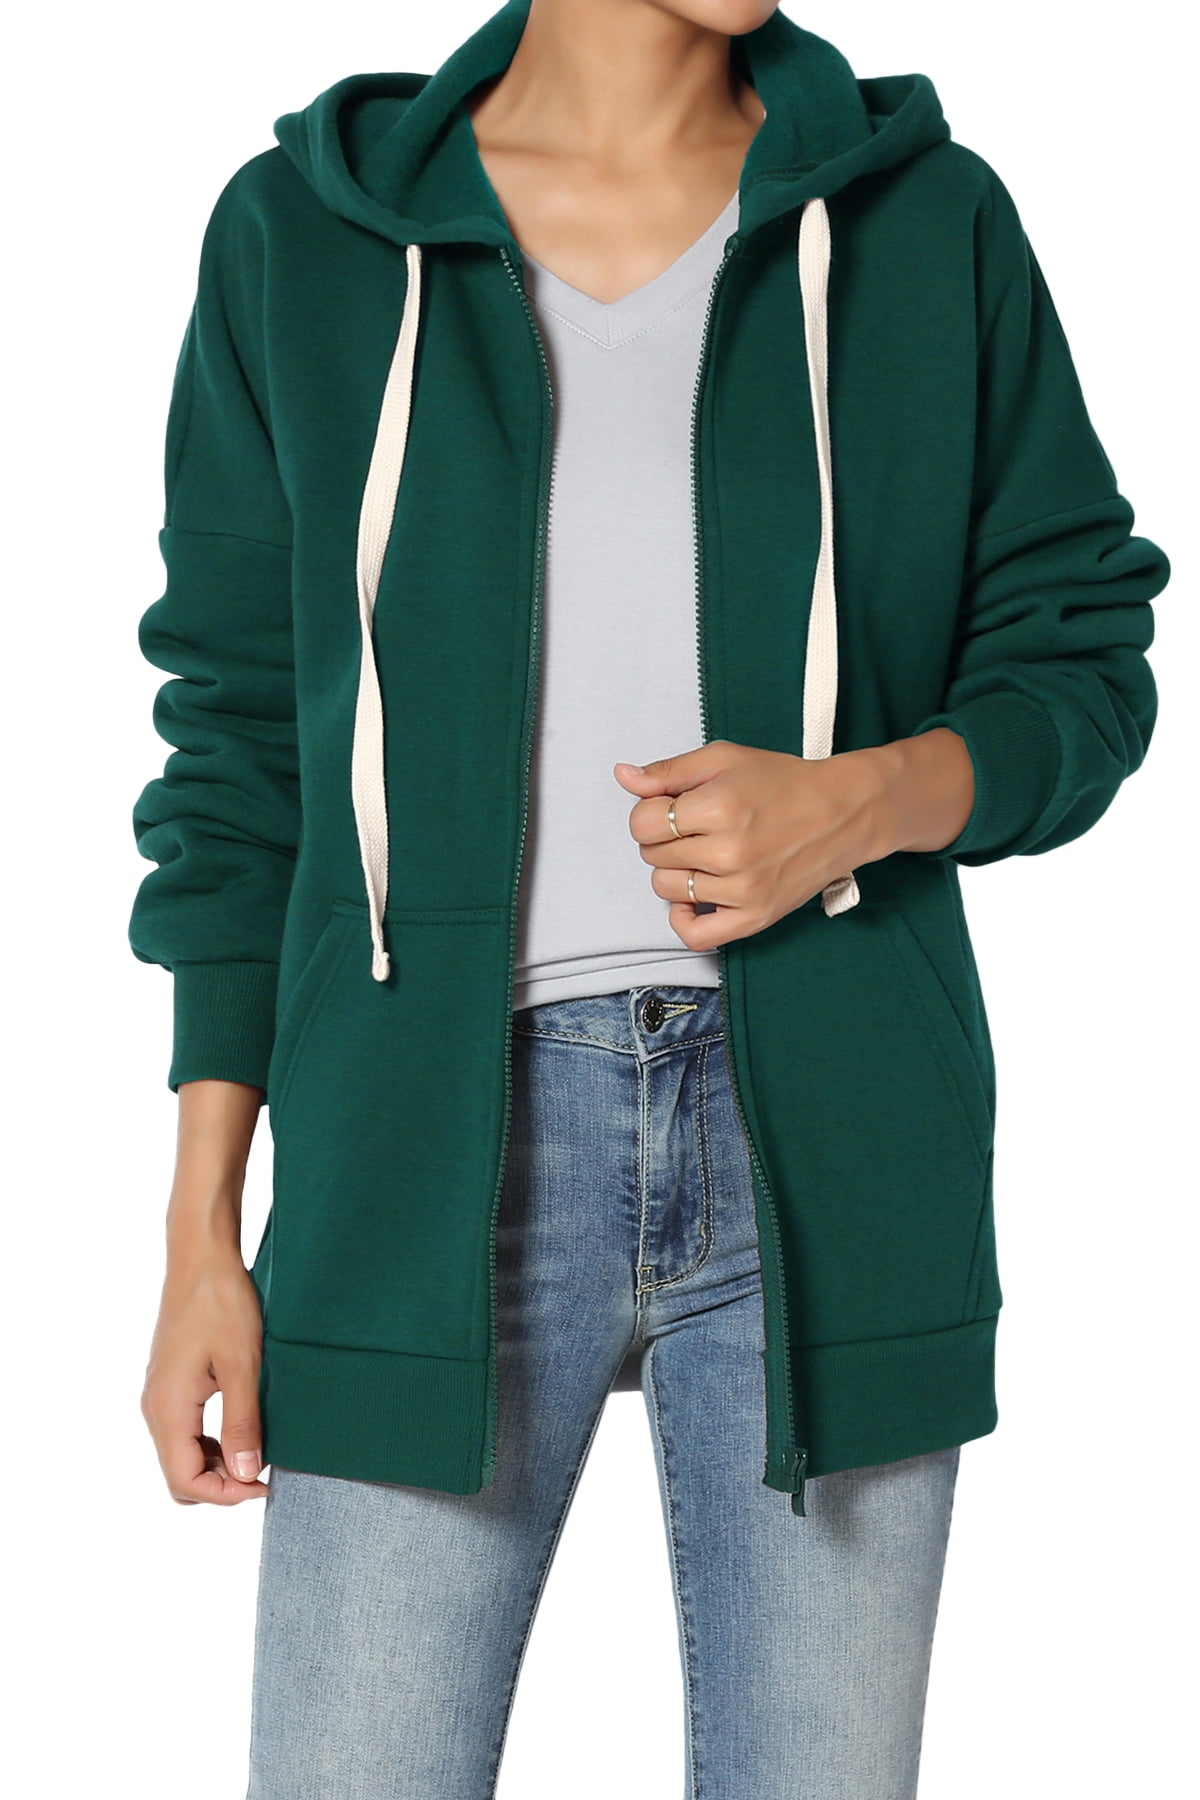 TheMogan Women's S~3X Full Zip Ultimate Cotton Fleece Hoodie Sweatshirt ...